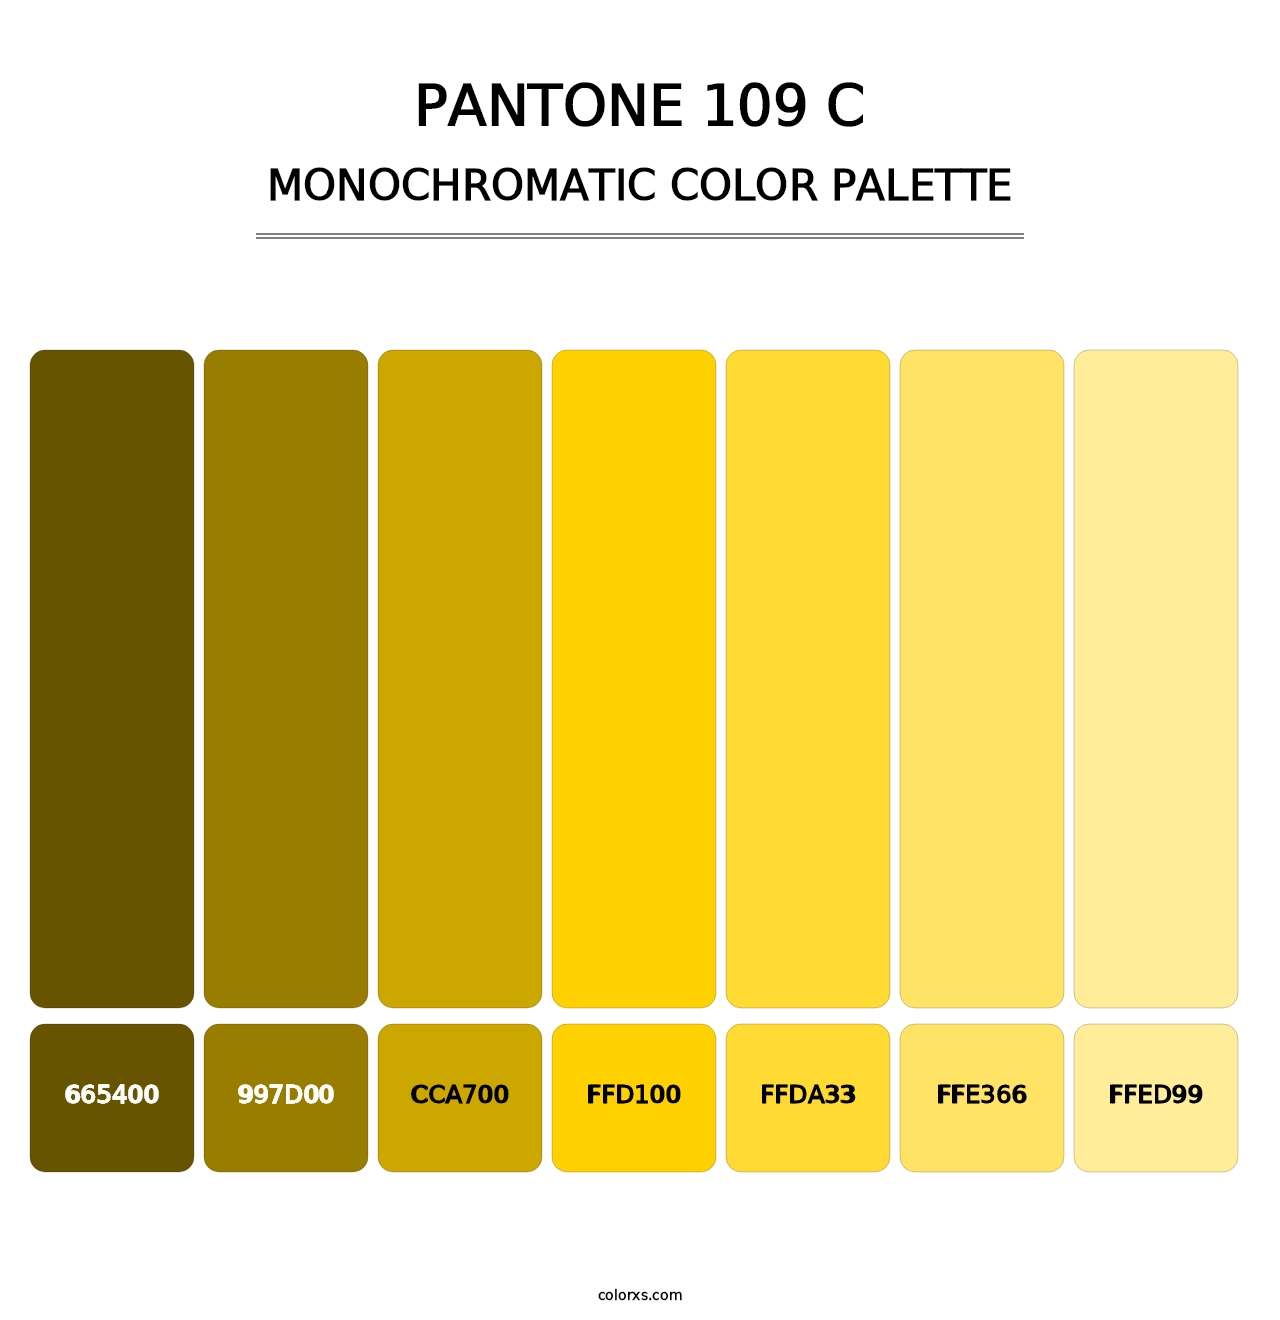 PANTONE 109 C - Monochromatic Color Palette